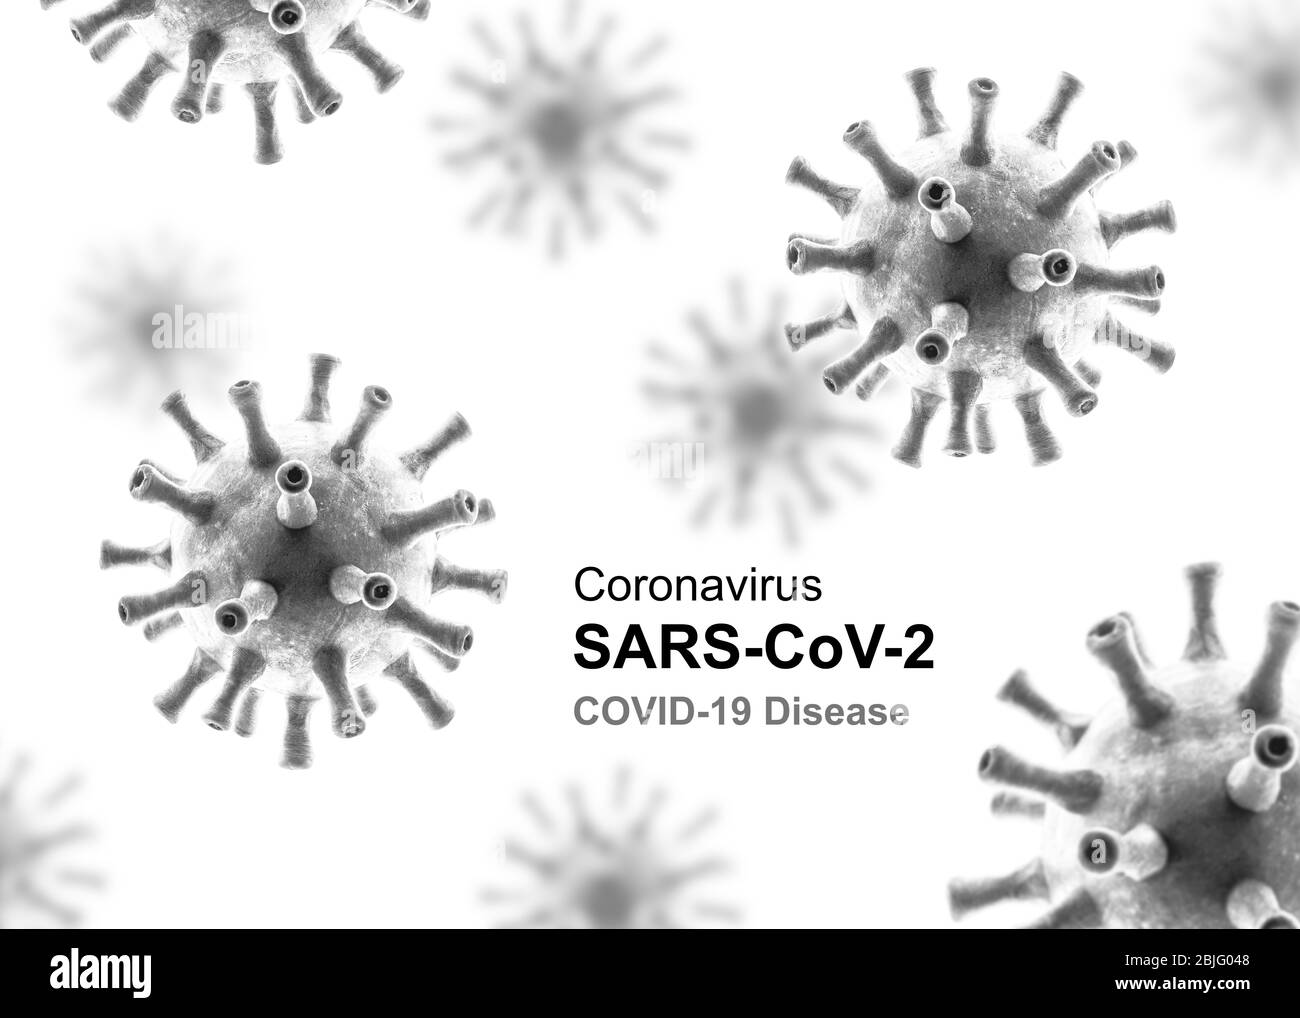 COVID-19 concetto di coronavirus, poster con icone grigie del virus della corona e iscrizione SARS-Cov-2 isolata su sfondo bianco. Banner con nuovo coronavir Foto Stock